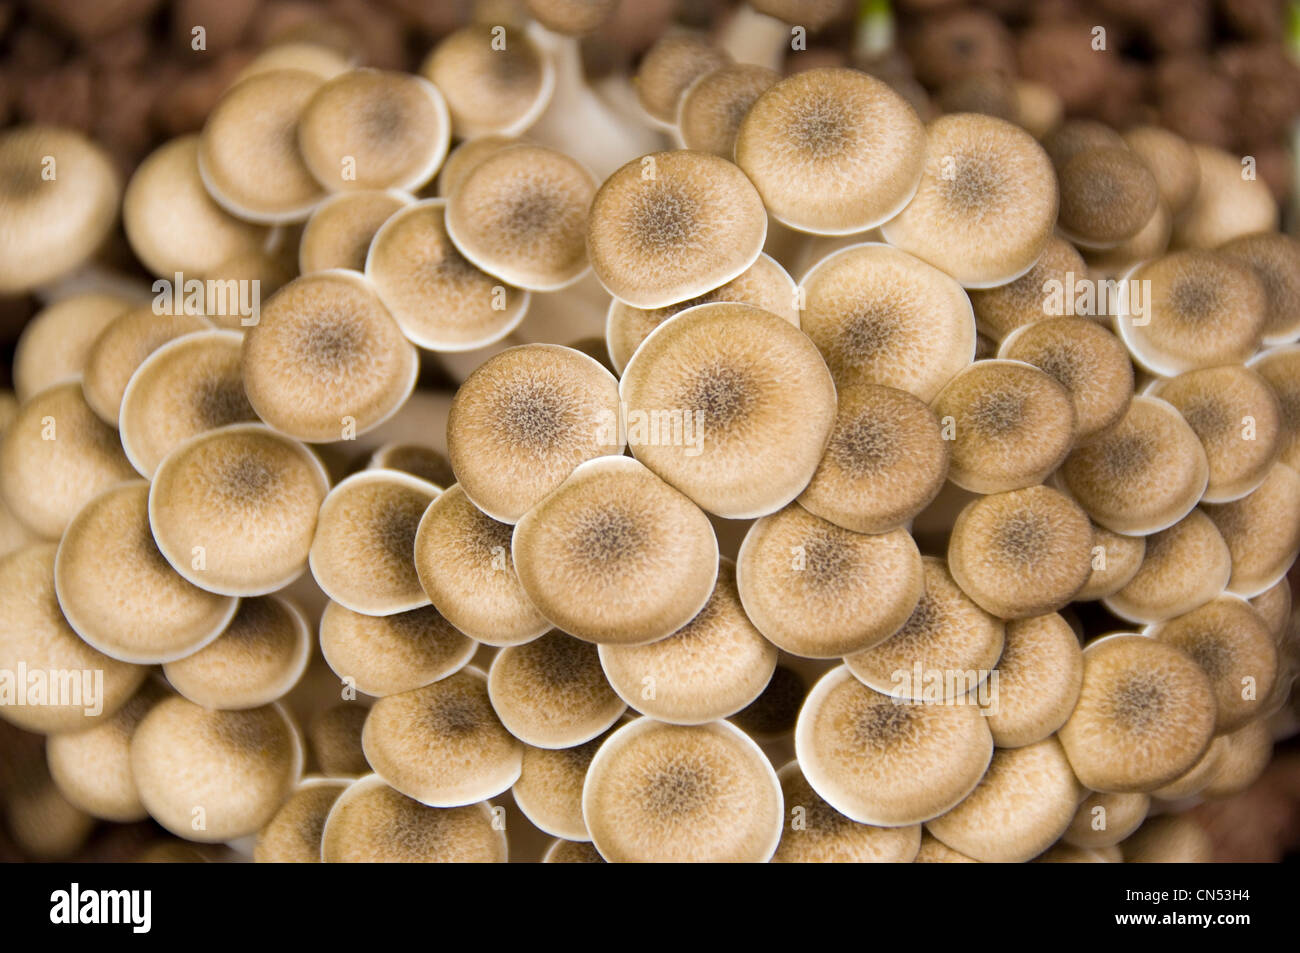 L'antenne horizontale close up de champignons shimeji Buna aka Brown hêtre, champignons Hypsizygus tessellatus, grandissant dans le compost. Banque D'Images